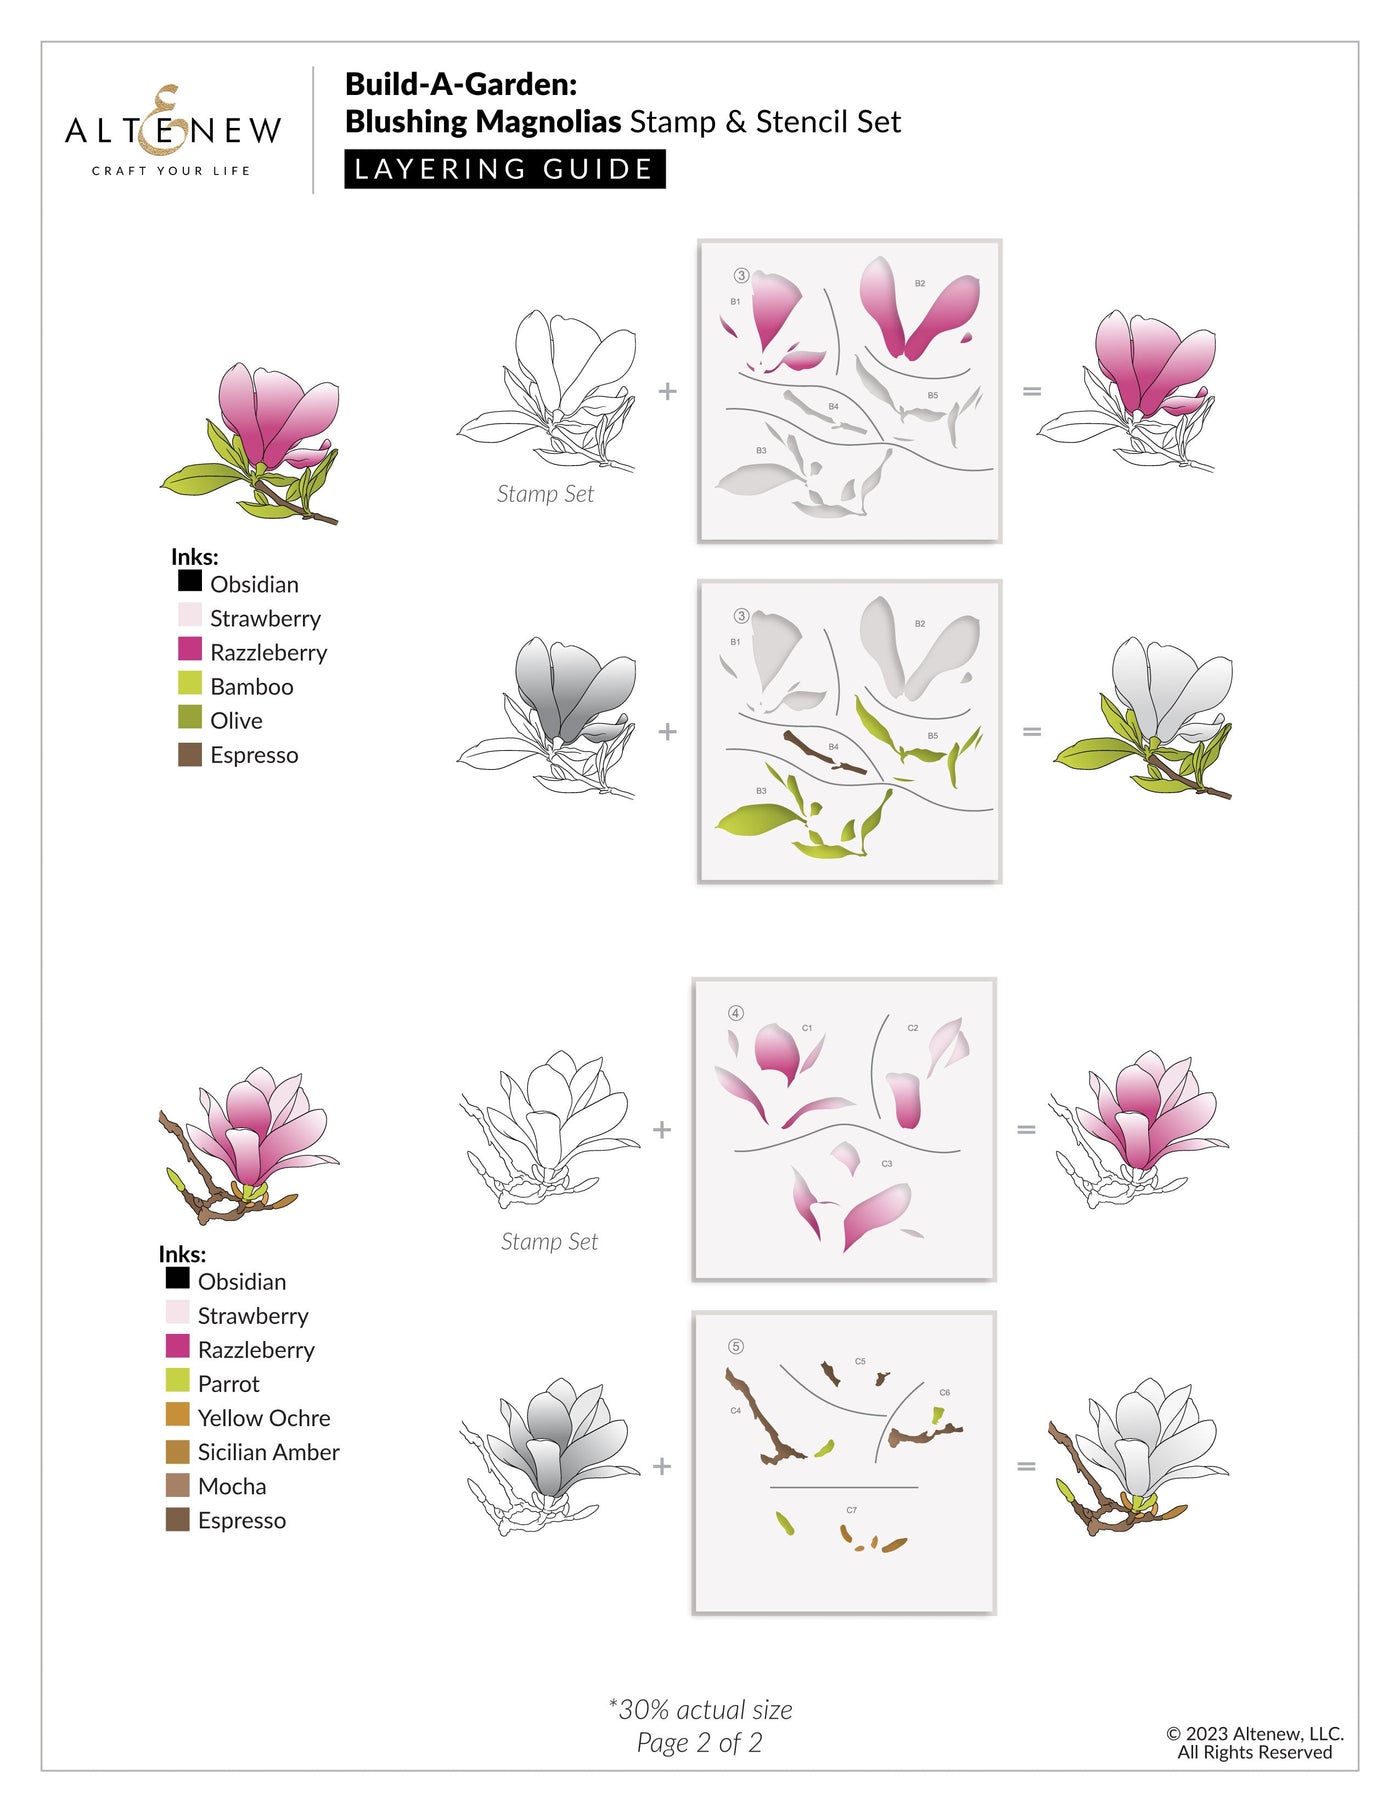 Build-A-Garden Set Build-A-Garden: Blushing Magnolias